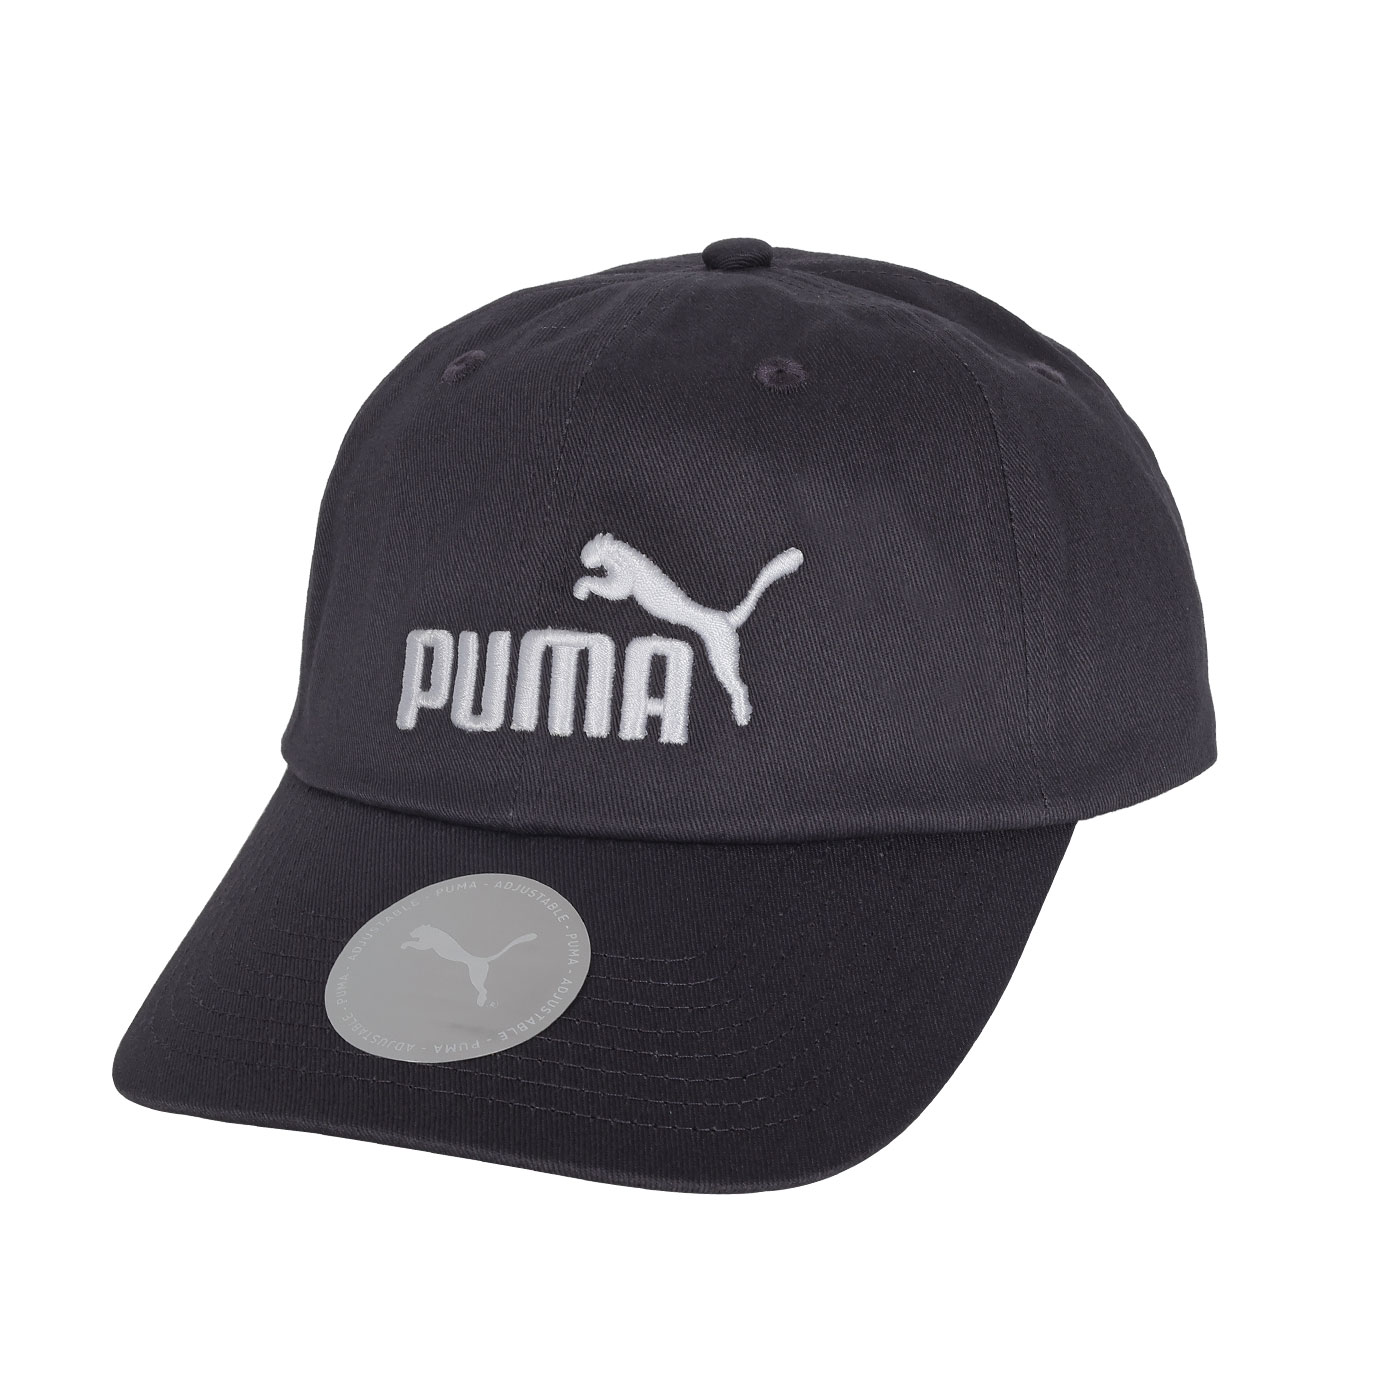 PUMA 基本系列 No.1 棒球帽  02435718 - 深灰白